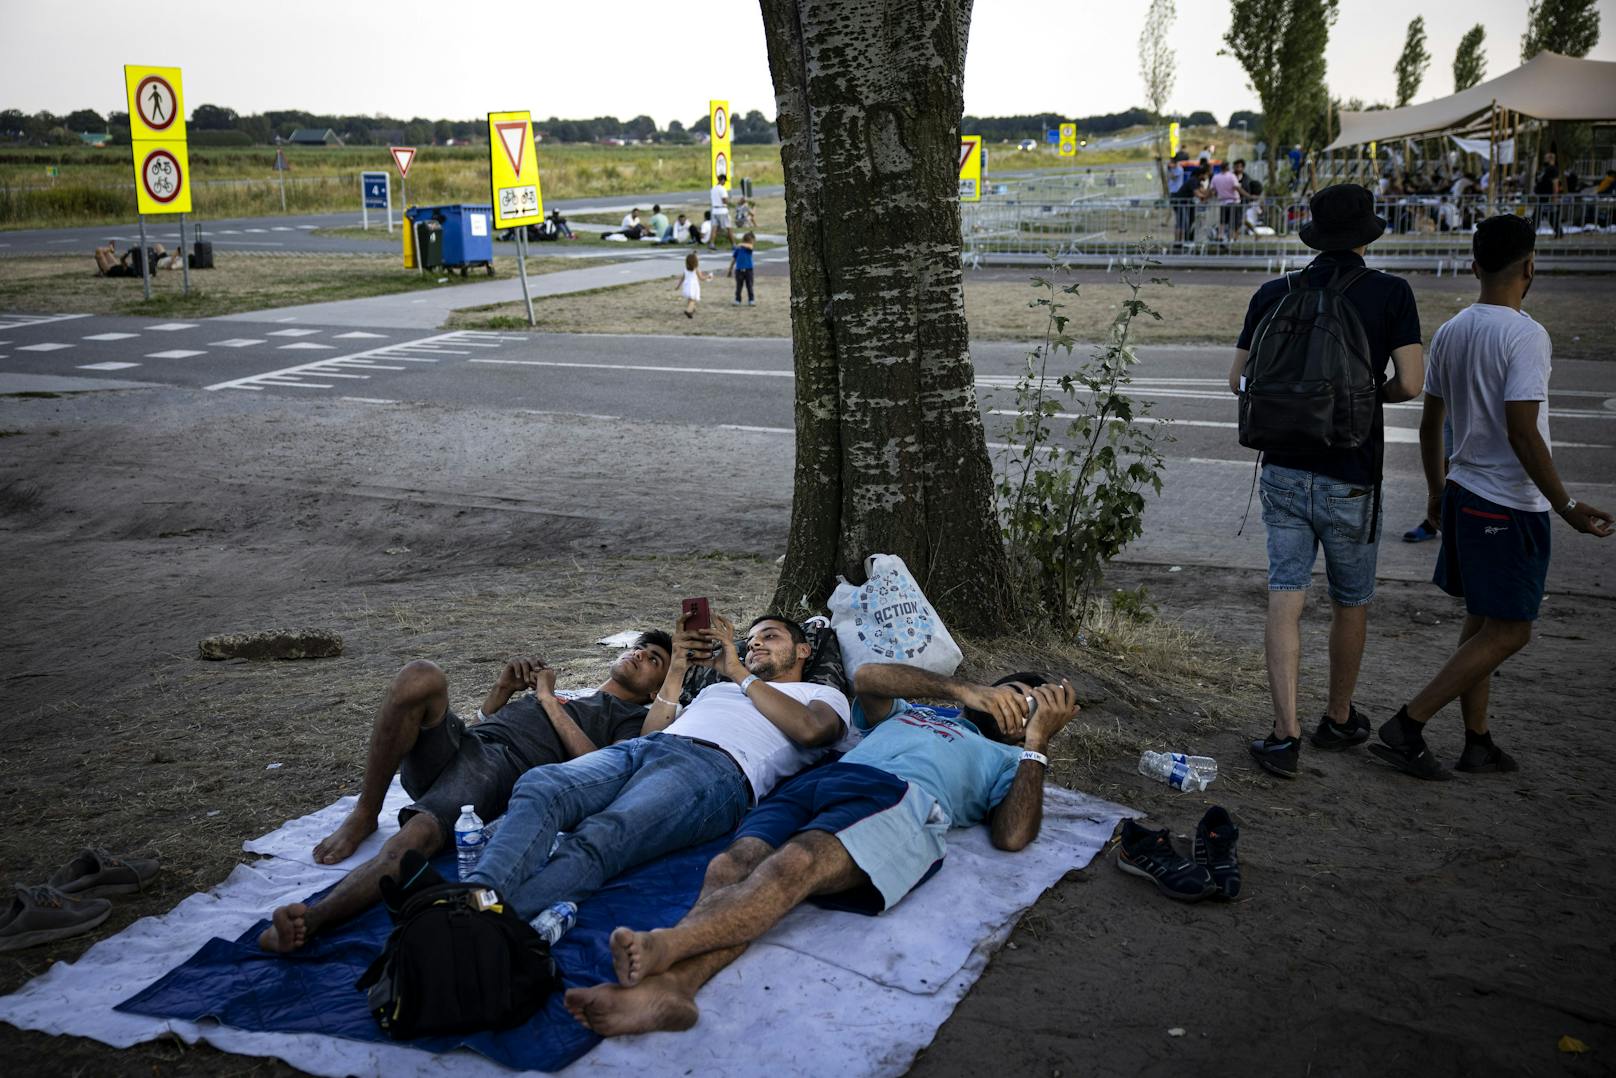 13.08.22: Asylbewerber vor dem Antragszentrum in Ter Apel. Die Folgen des gestoppten Durchlaufs von Asylbewerbern sind in der Einsatzzentrale Groningen seit Monaten am intensivsten. Es ist seit geraumer Zeit überfüllt, so dass die Menschen regelmäßig draußen schlafen müssen.